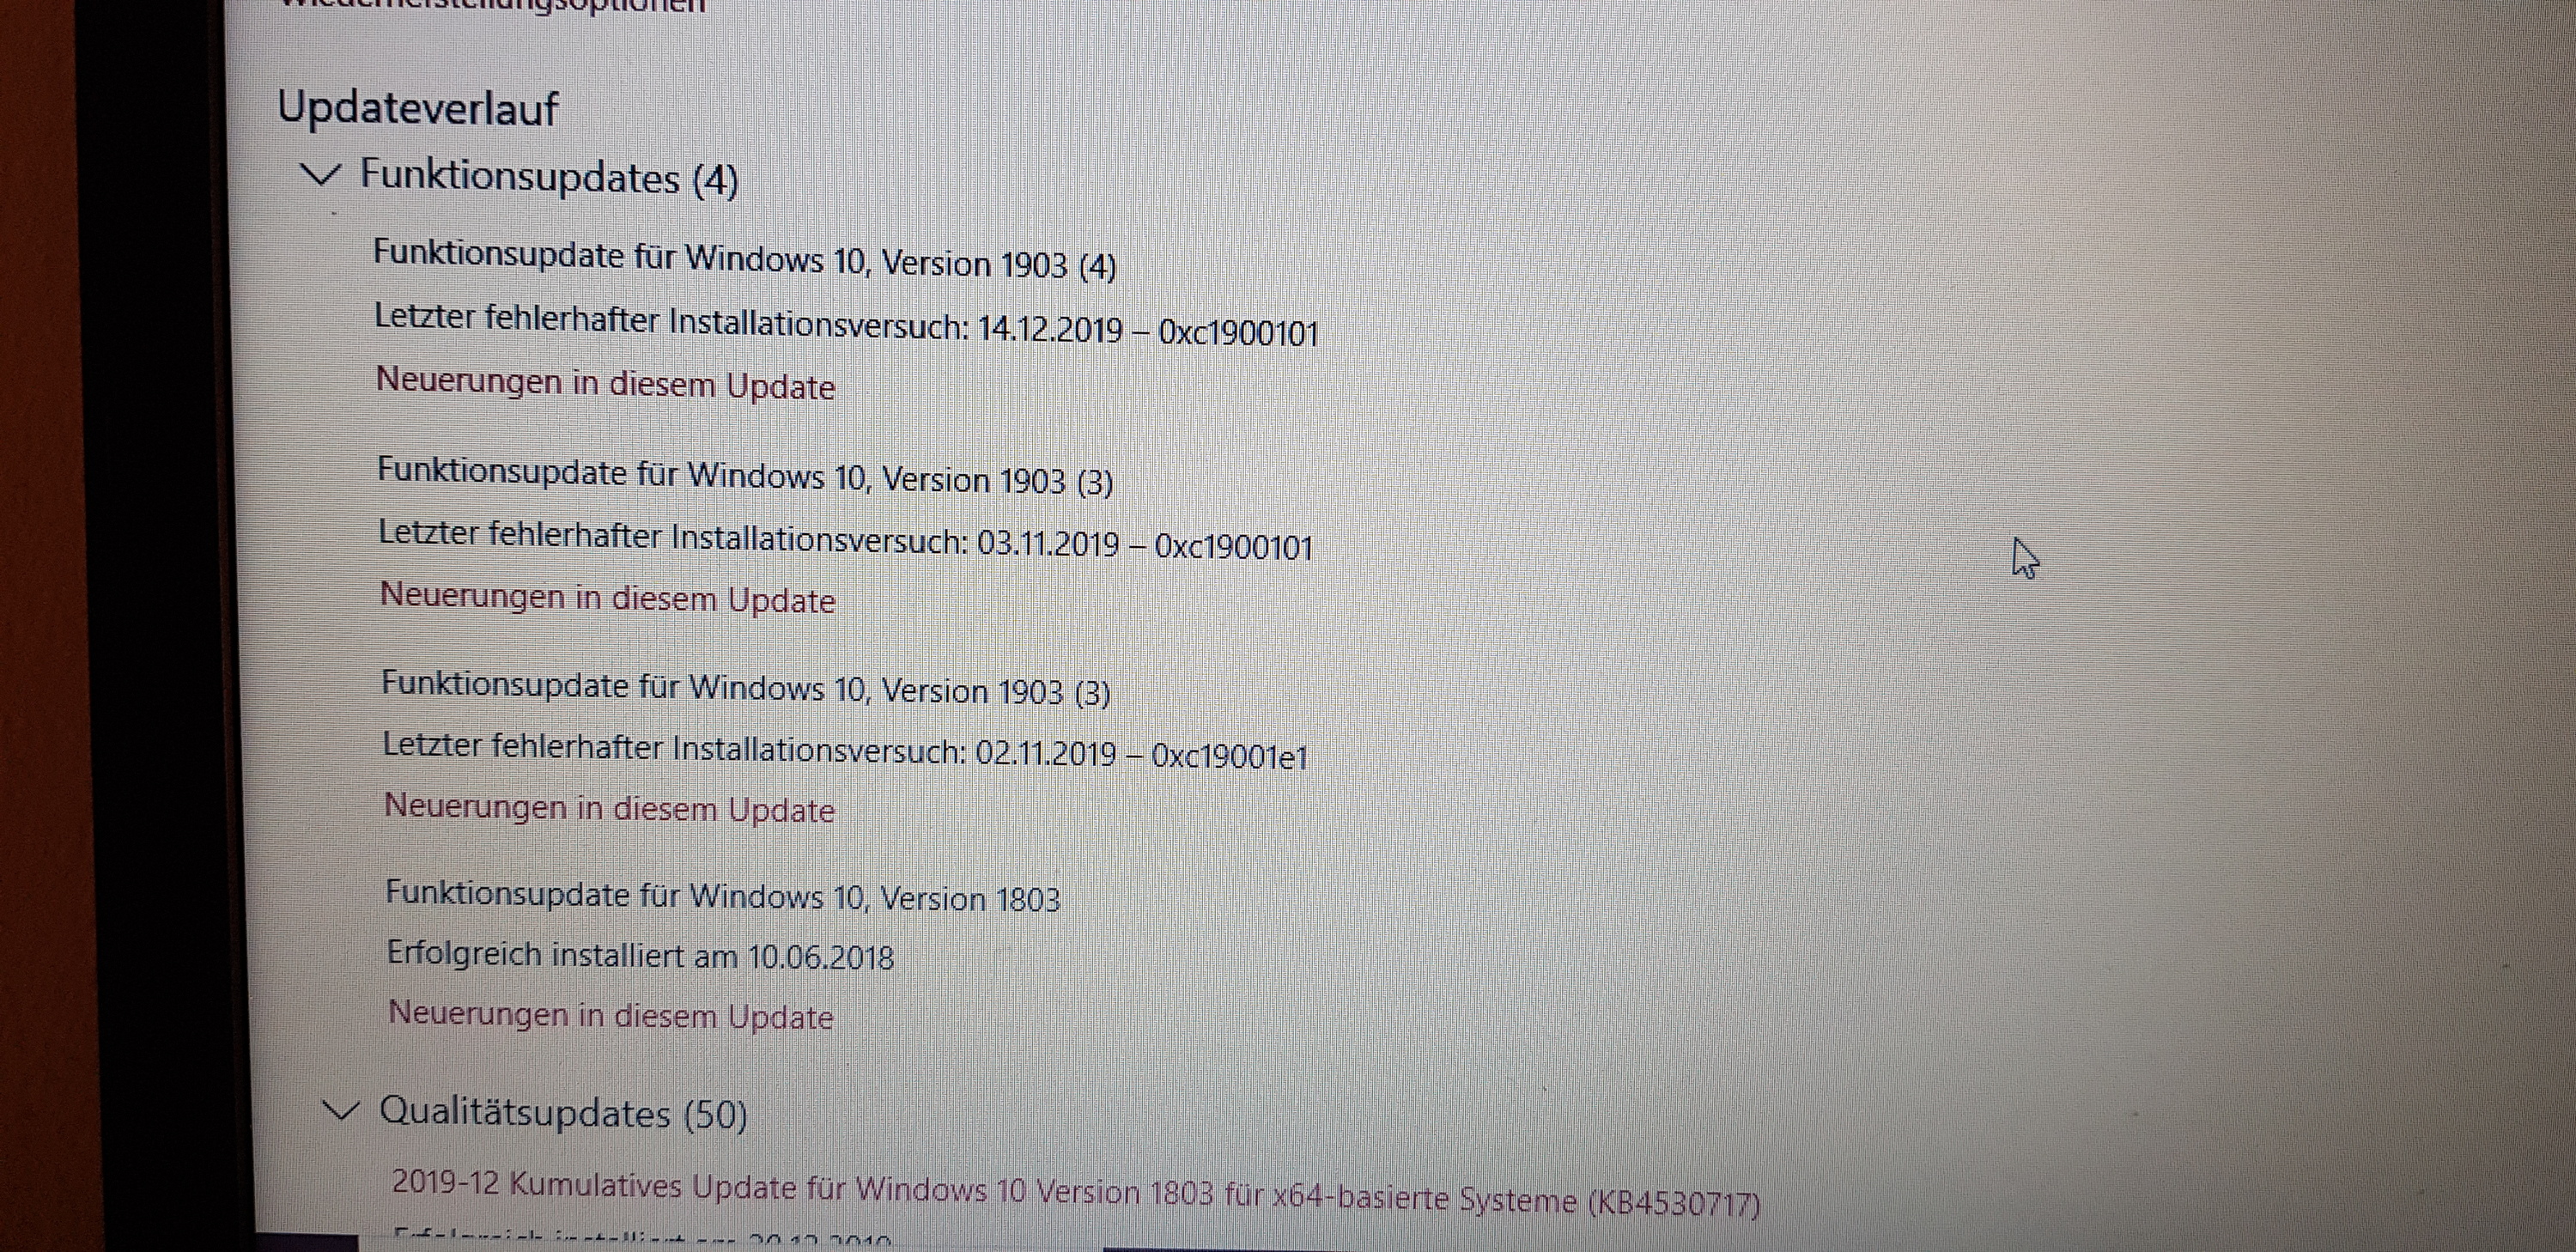 Brauche dringend Hilfe Lauwerk, Windows 10